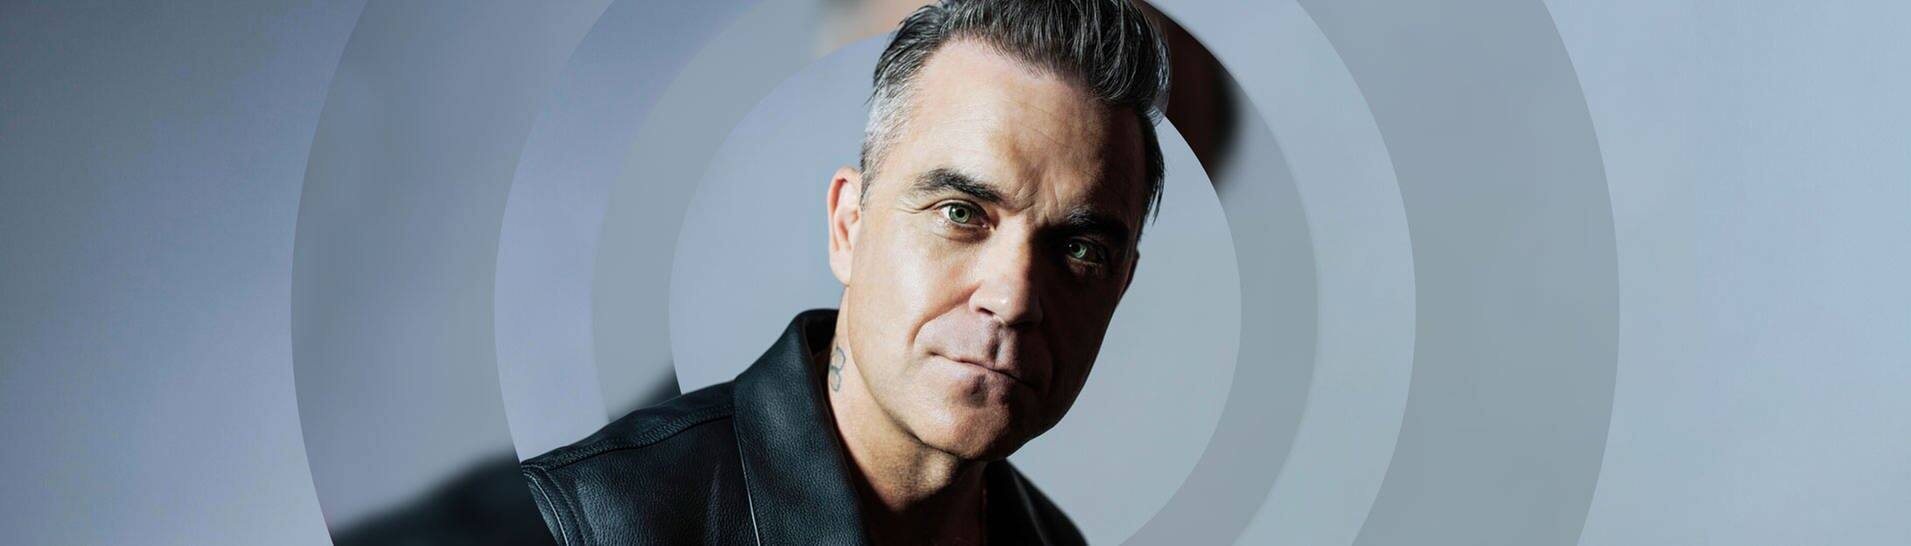 Der Sänger Robbie Williams vor einem blauen Hintergrund, er trägt eine schwarze Lederjacke. (Foto: Leo Baron)